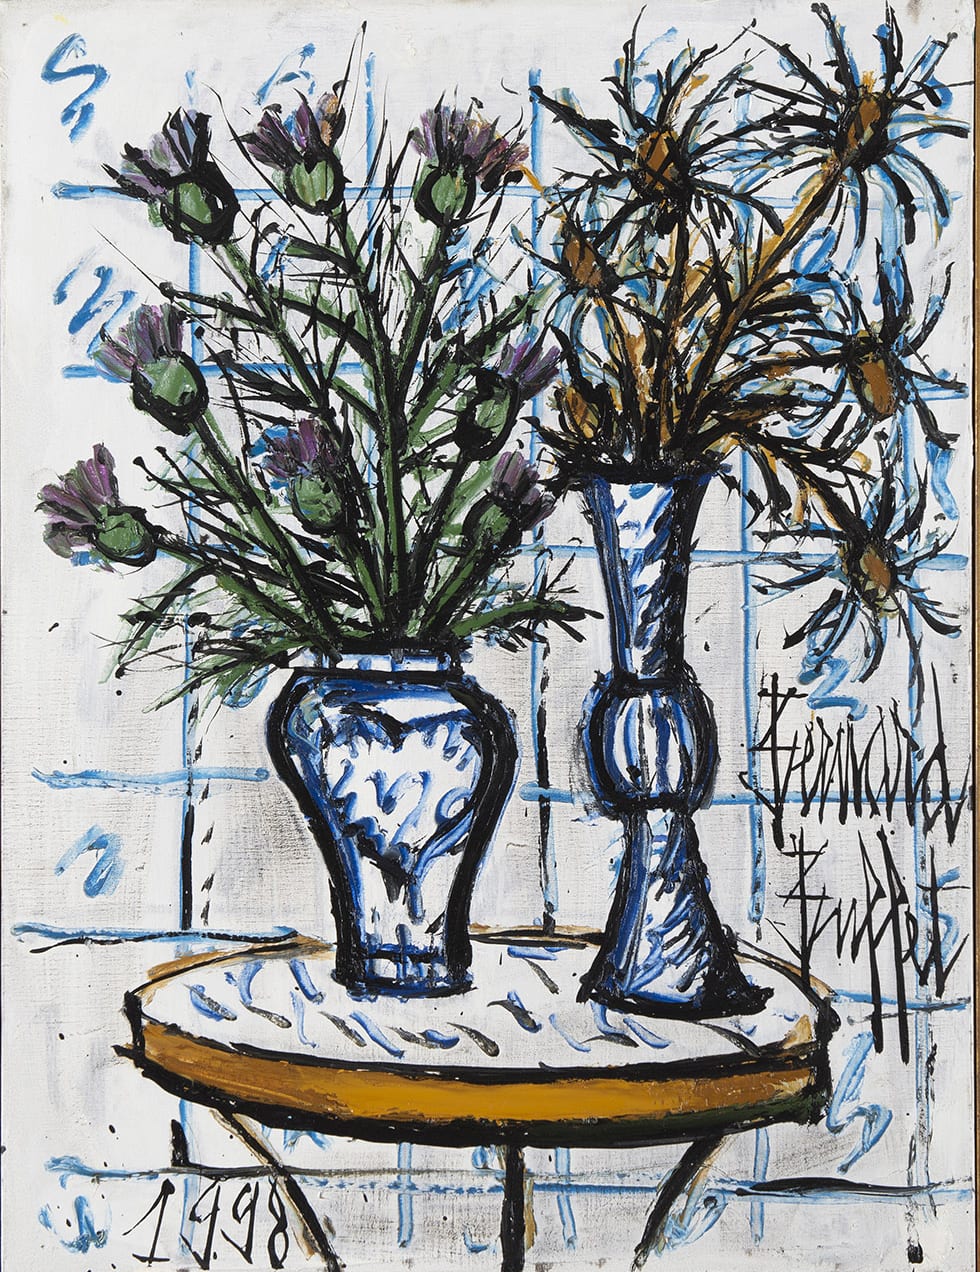 BERNARD BUFFET, Vases de fleurs sur un guéridon, 1998